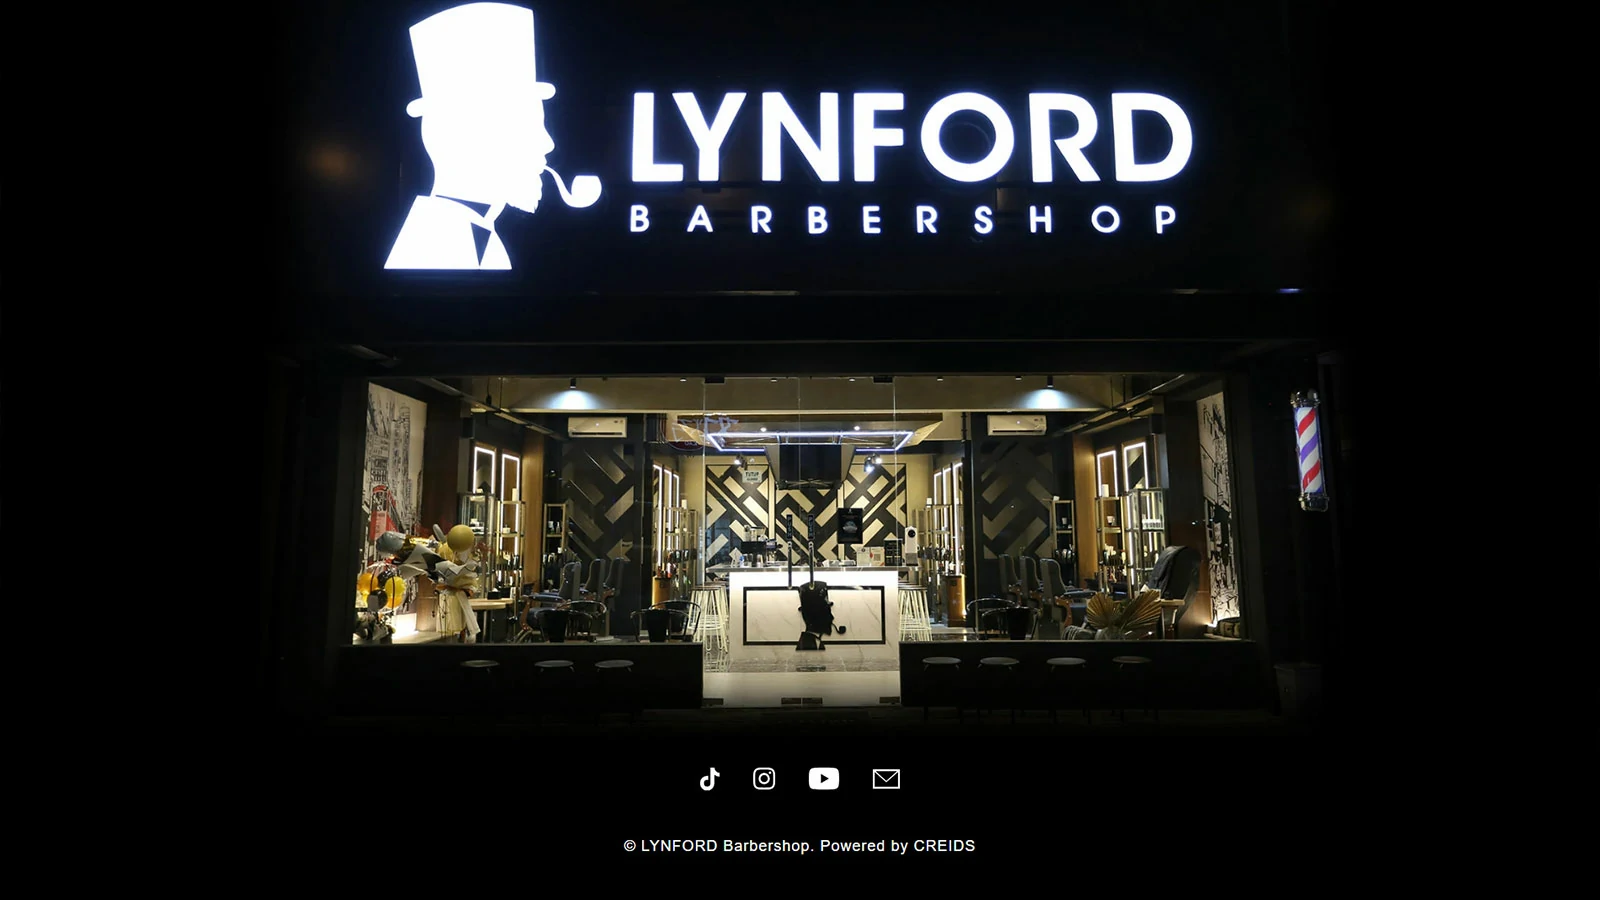 LYNFORD Barbershop